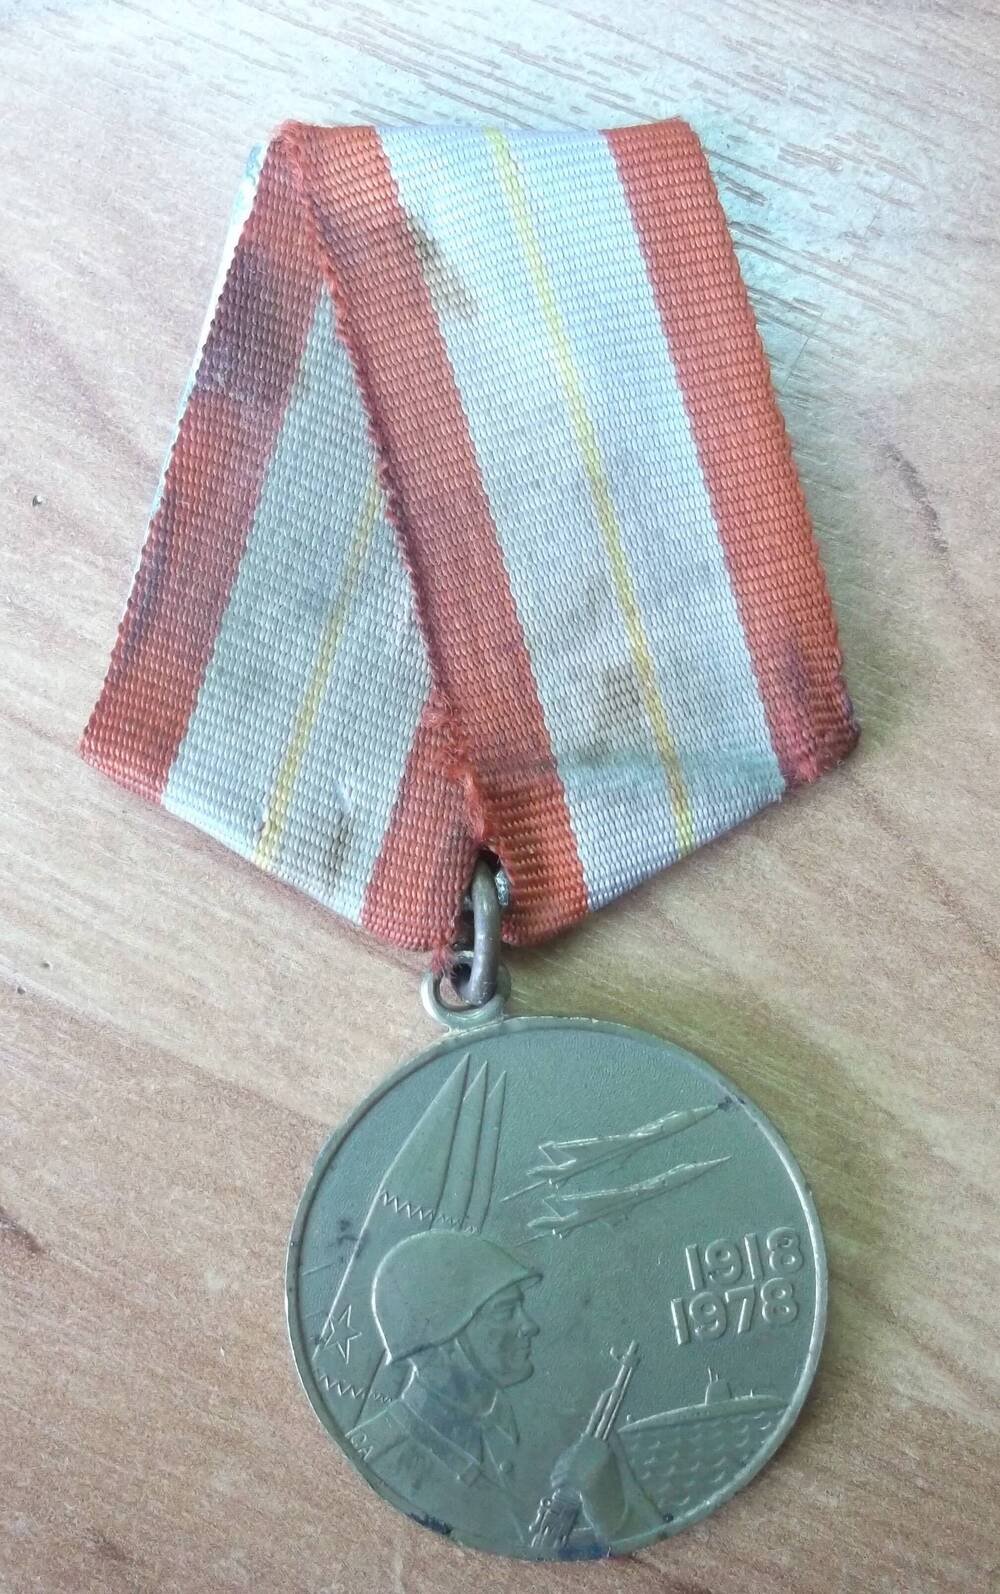 Медаль 60 лет Вооруженных сил СССР, Гних Эдуарда Иосифовича